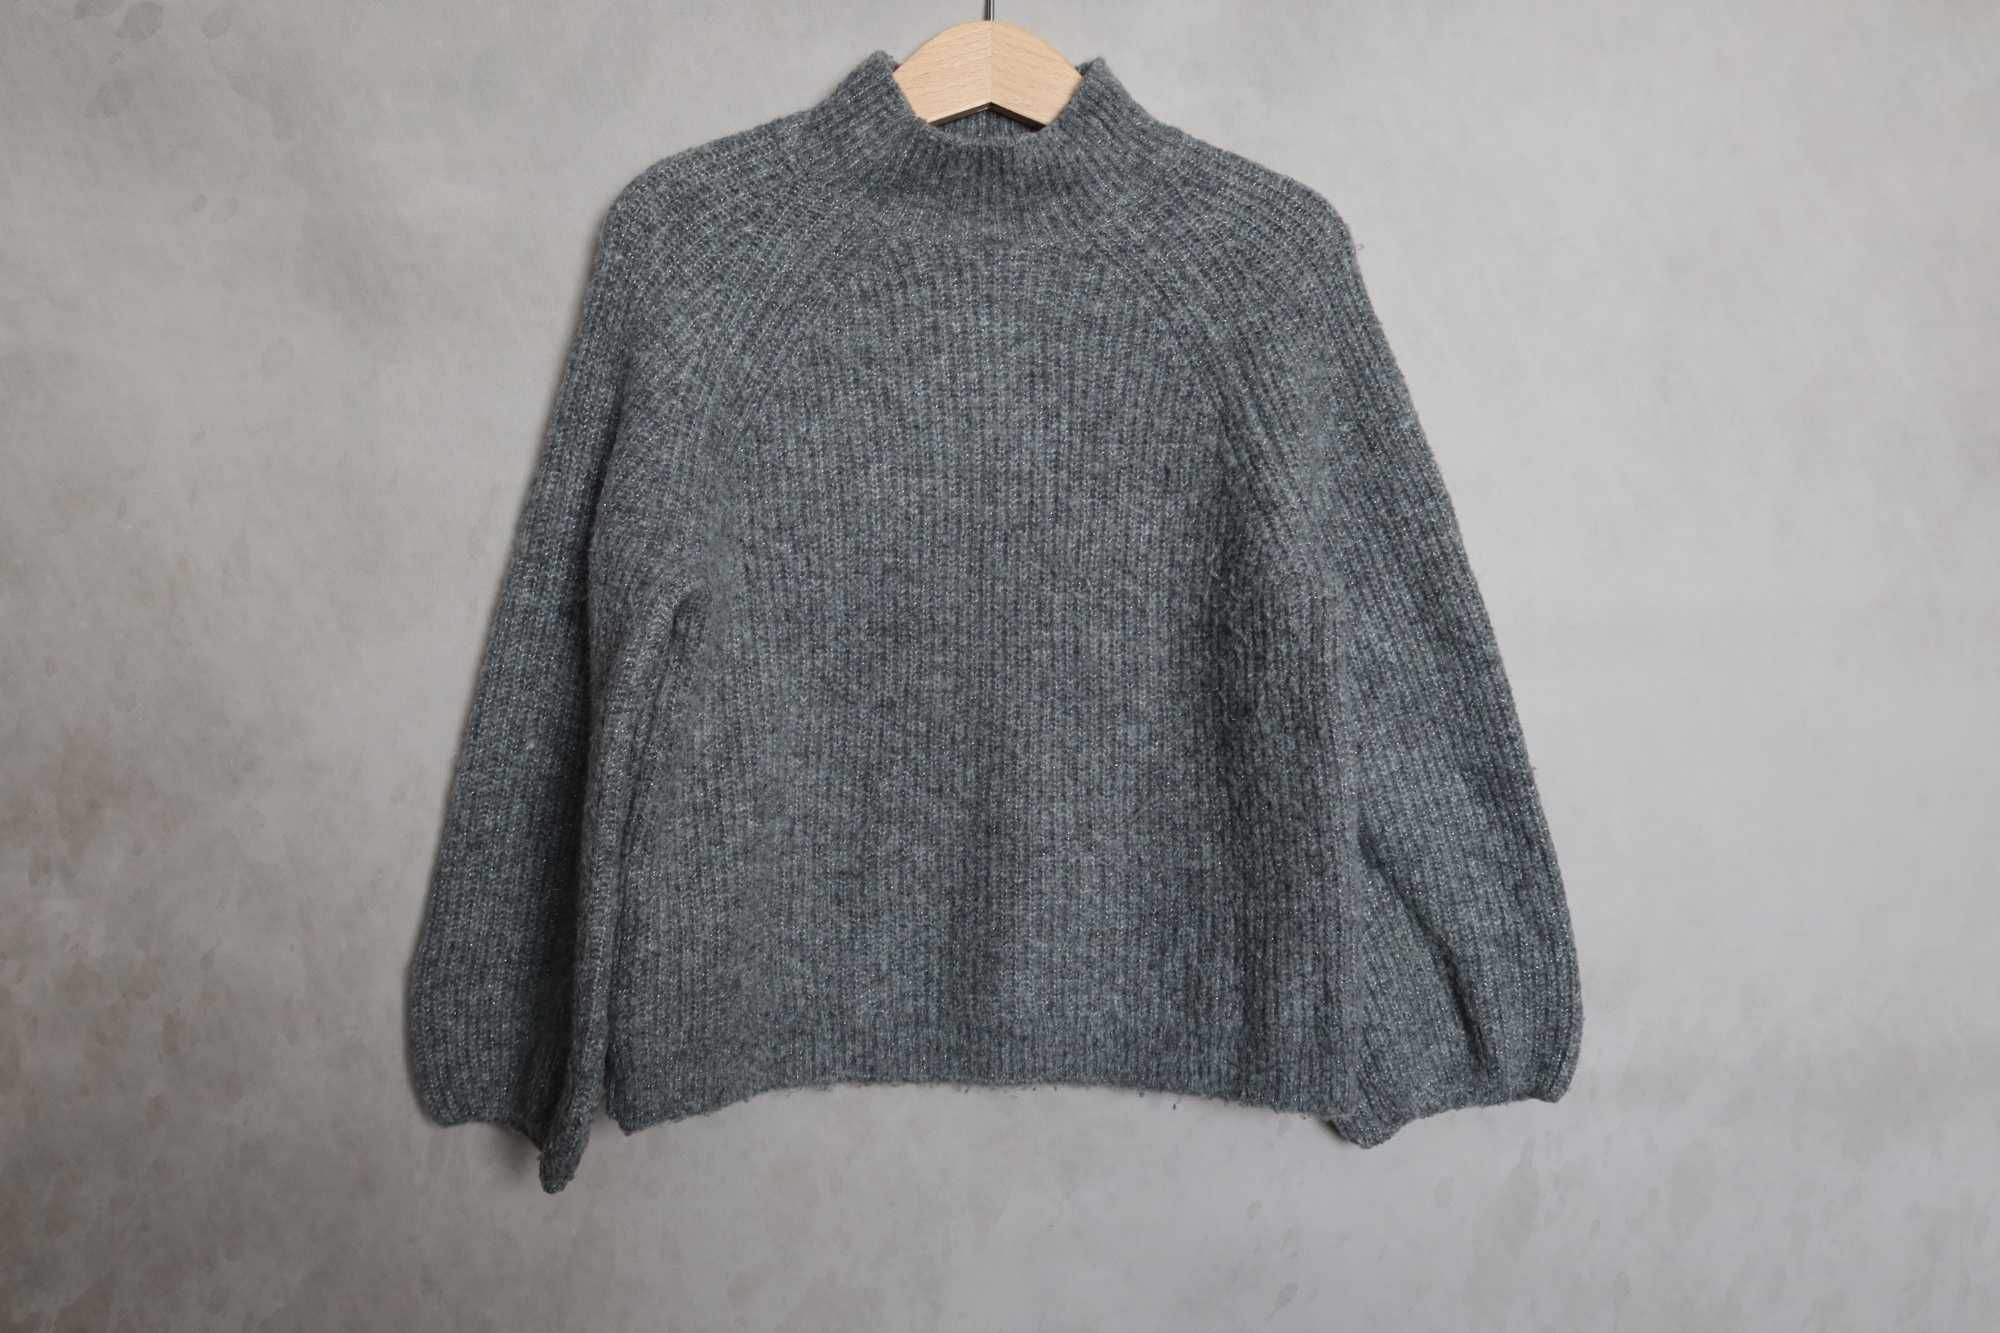 Sweter ZARA 110 szary melanż miękki srebrna nitka obszerny oversize